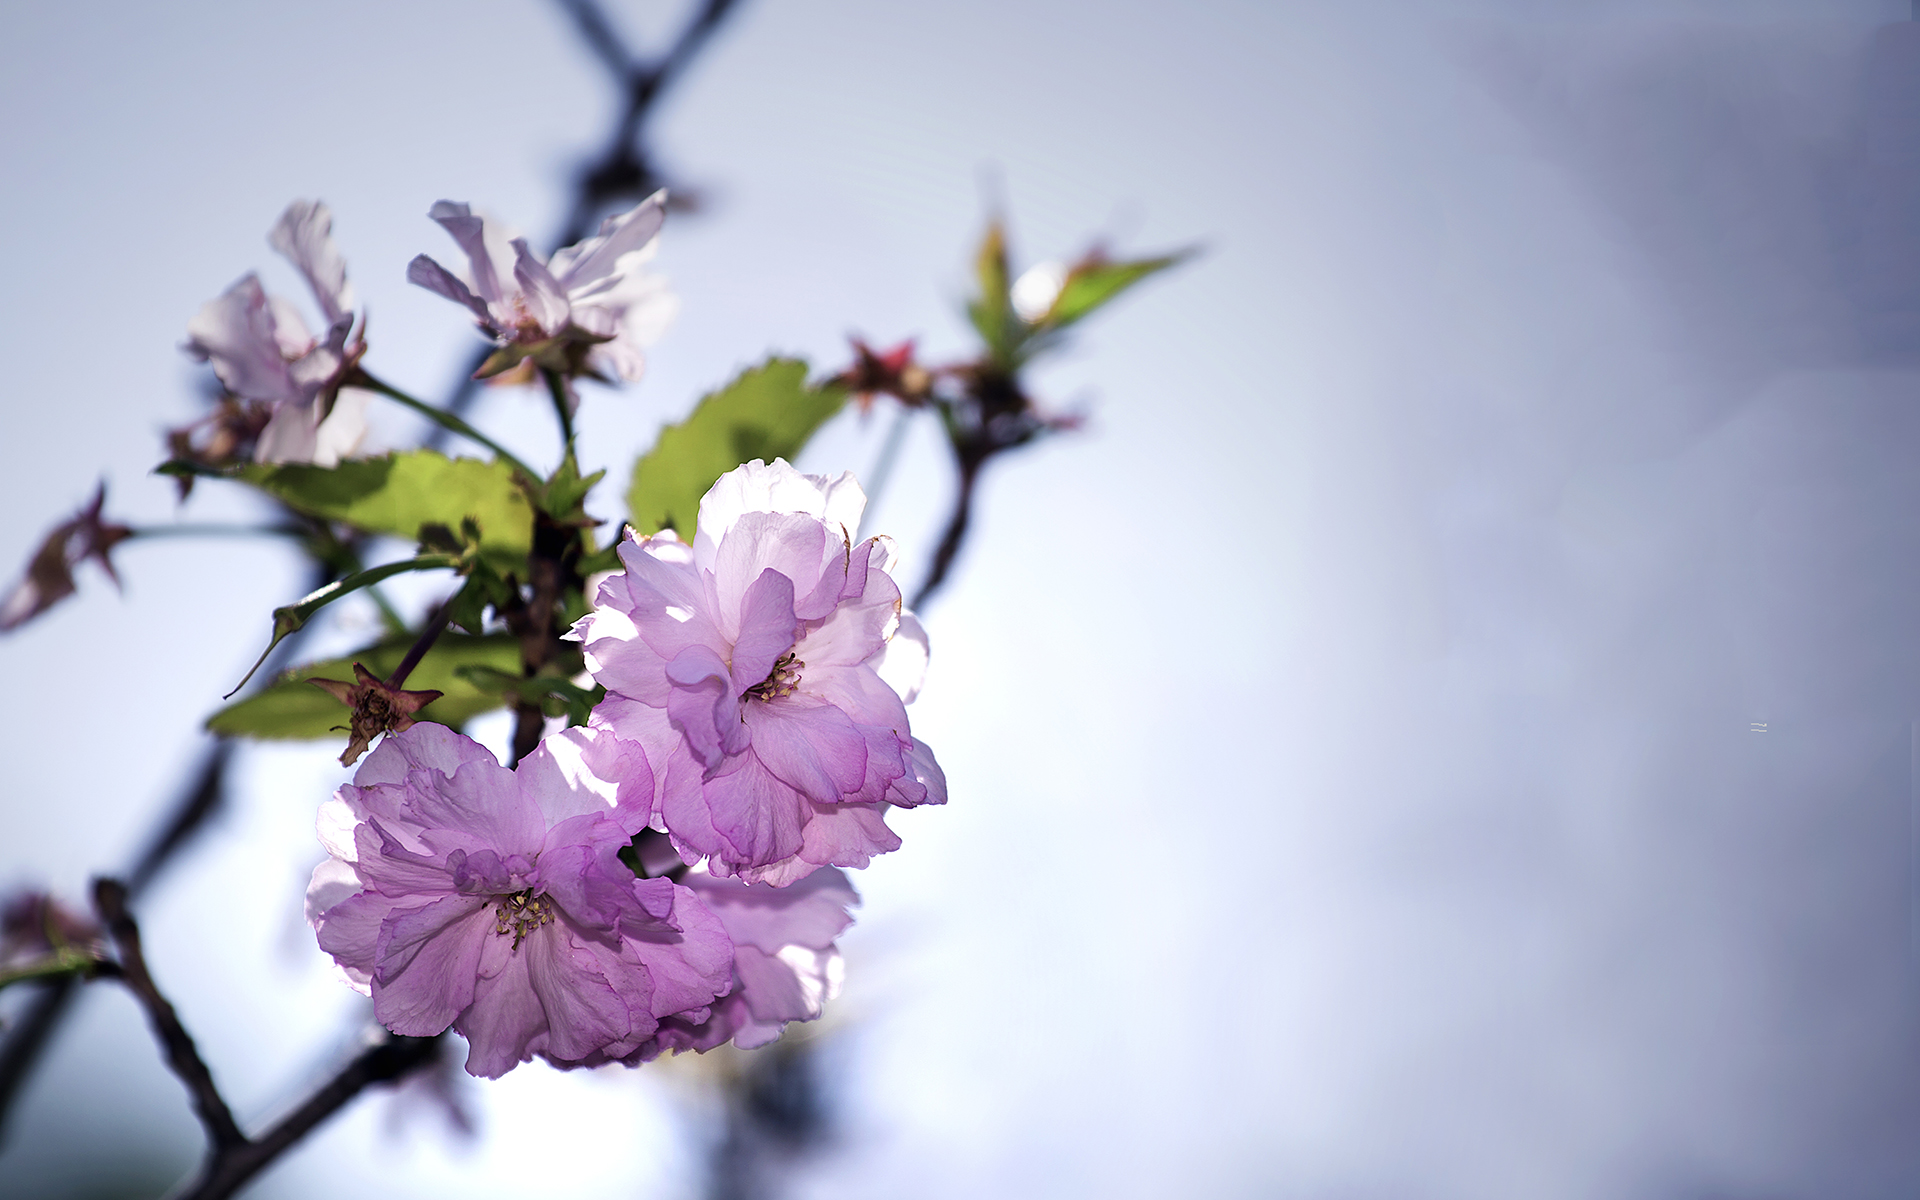 简单清新淡雅的图片 唯美花卉植物摄影高清图片